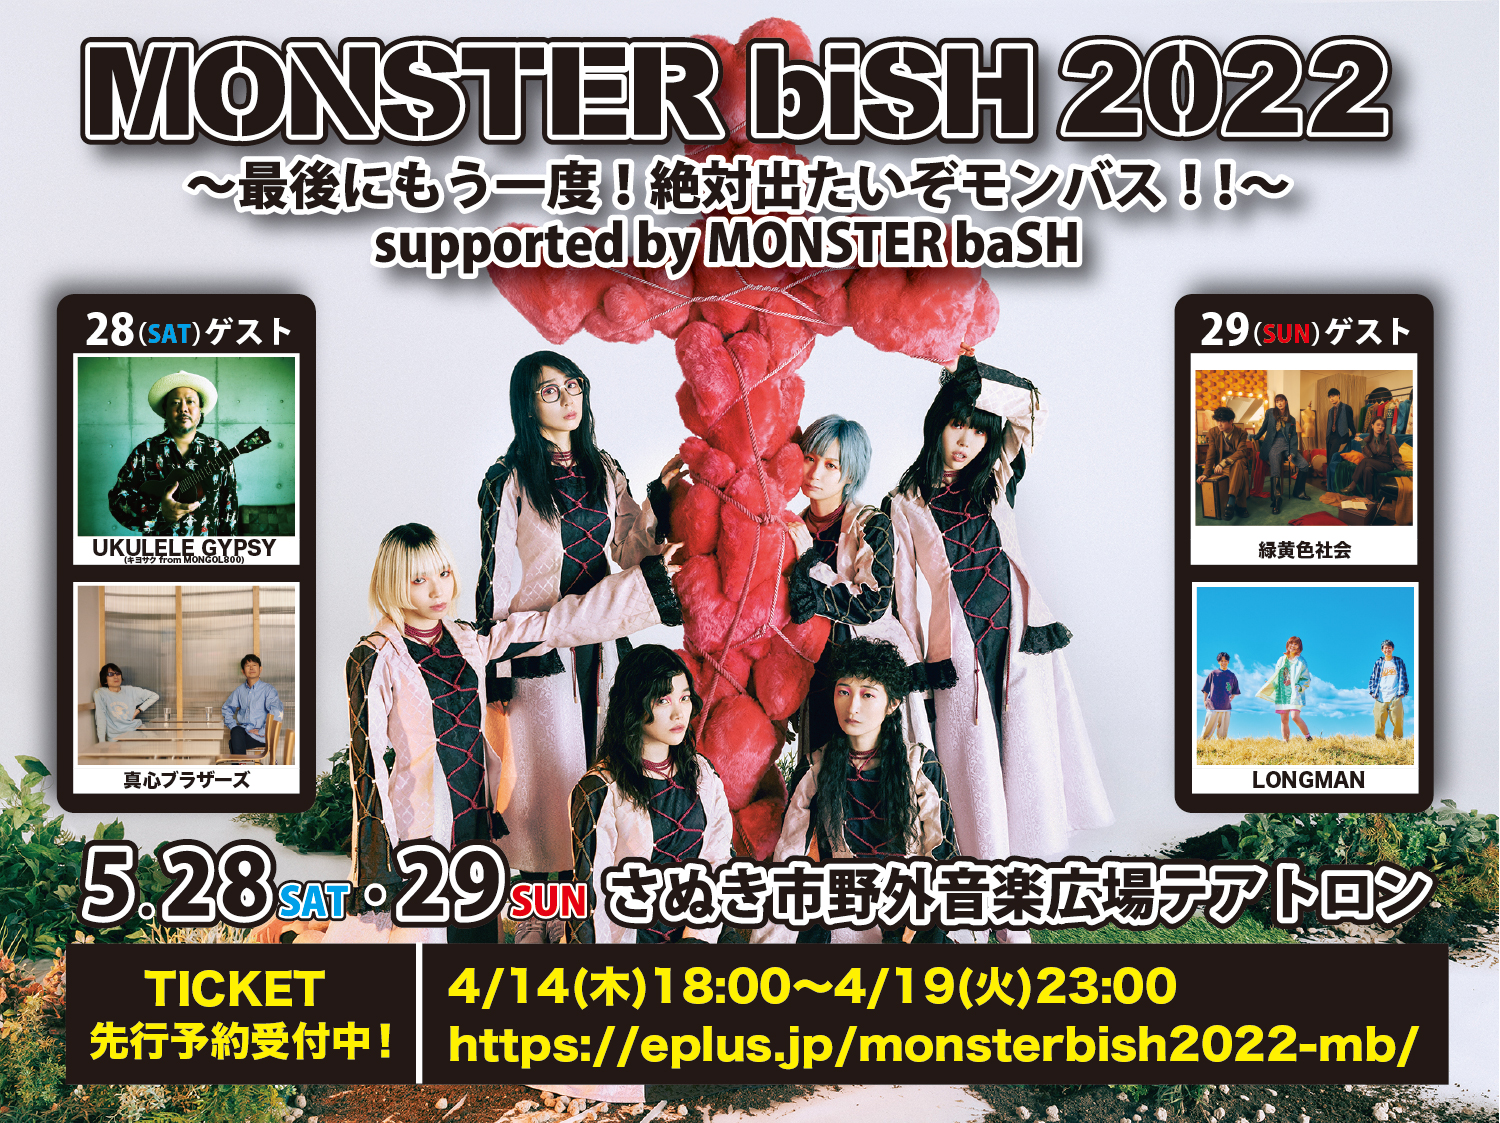 Monster Bash Monsterbash Twitter